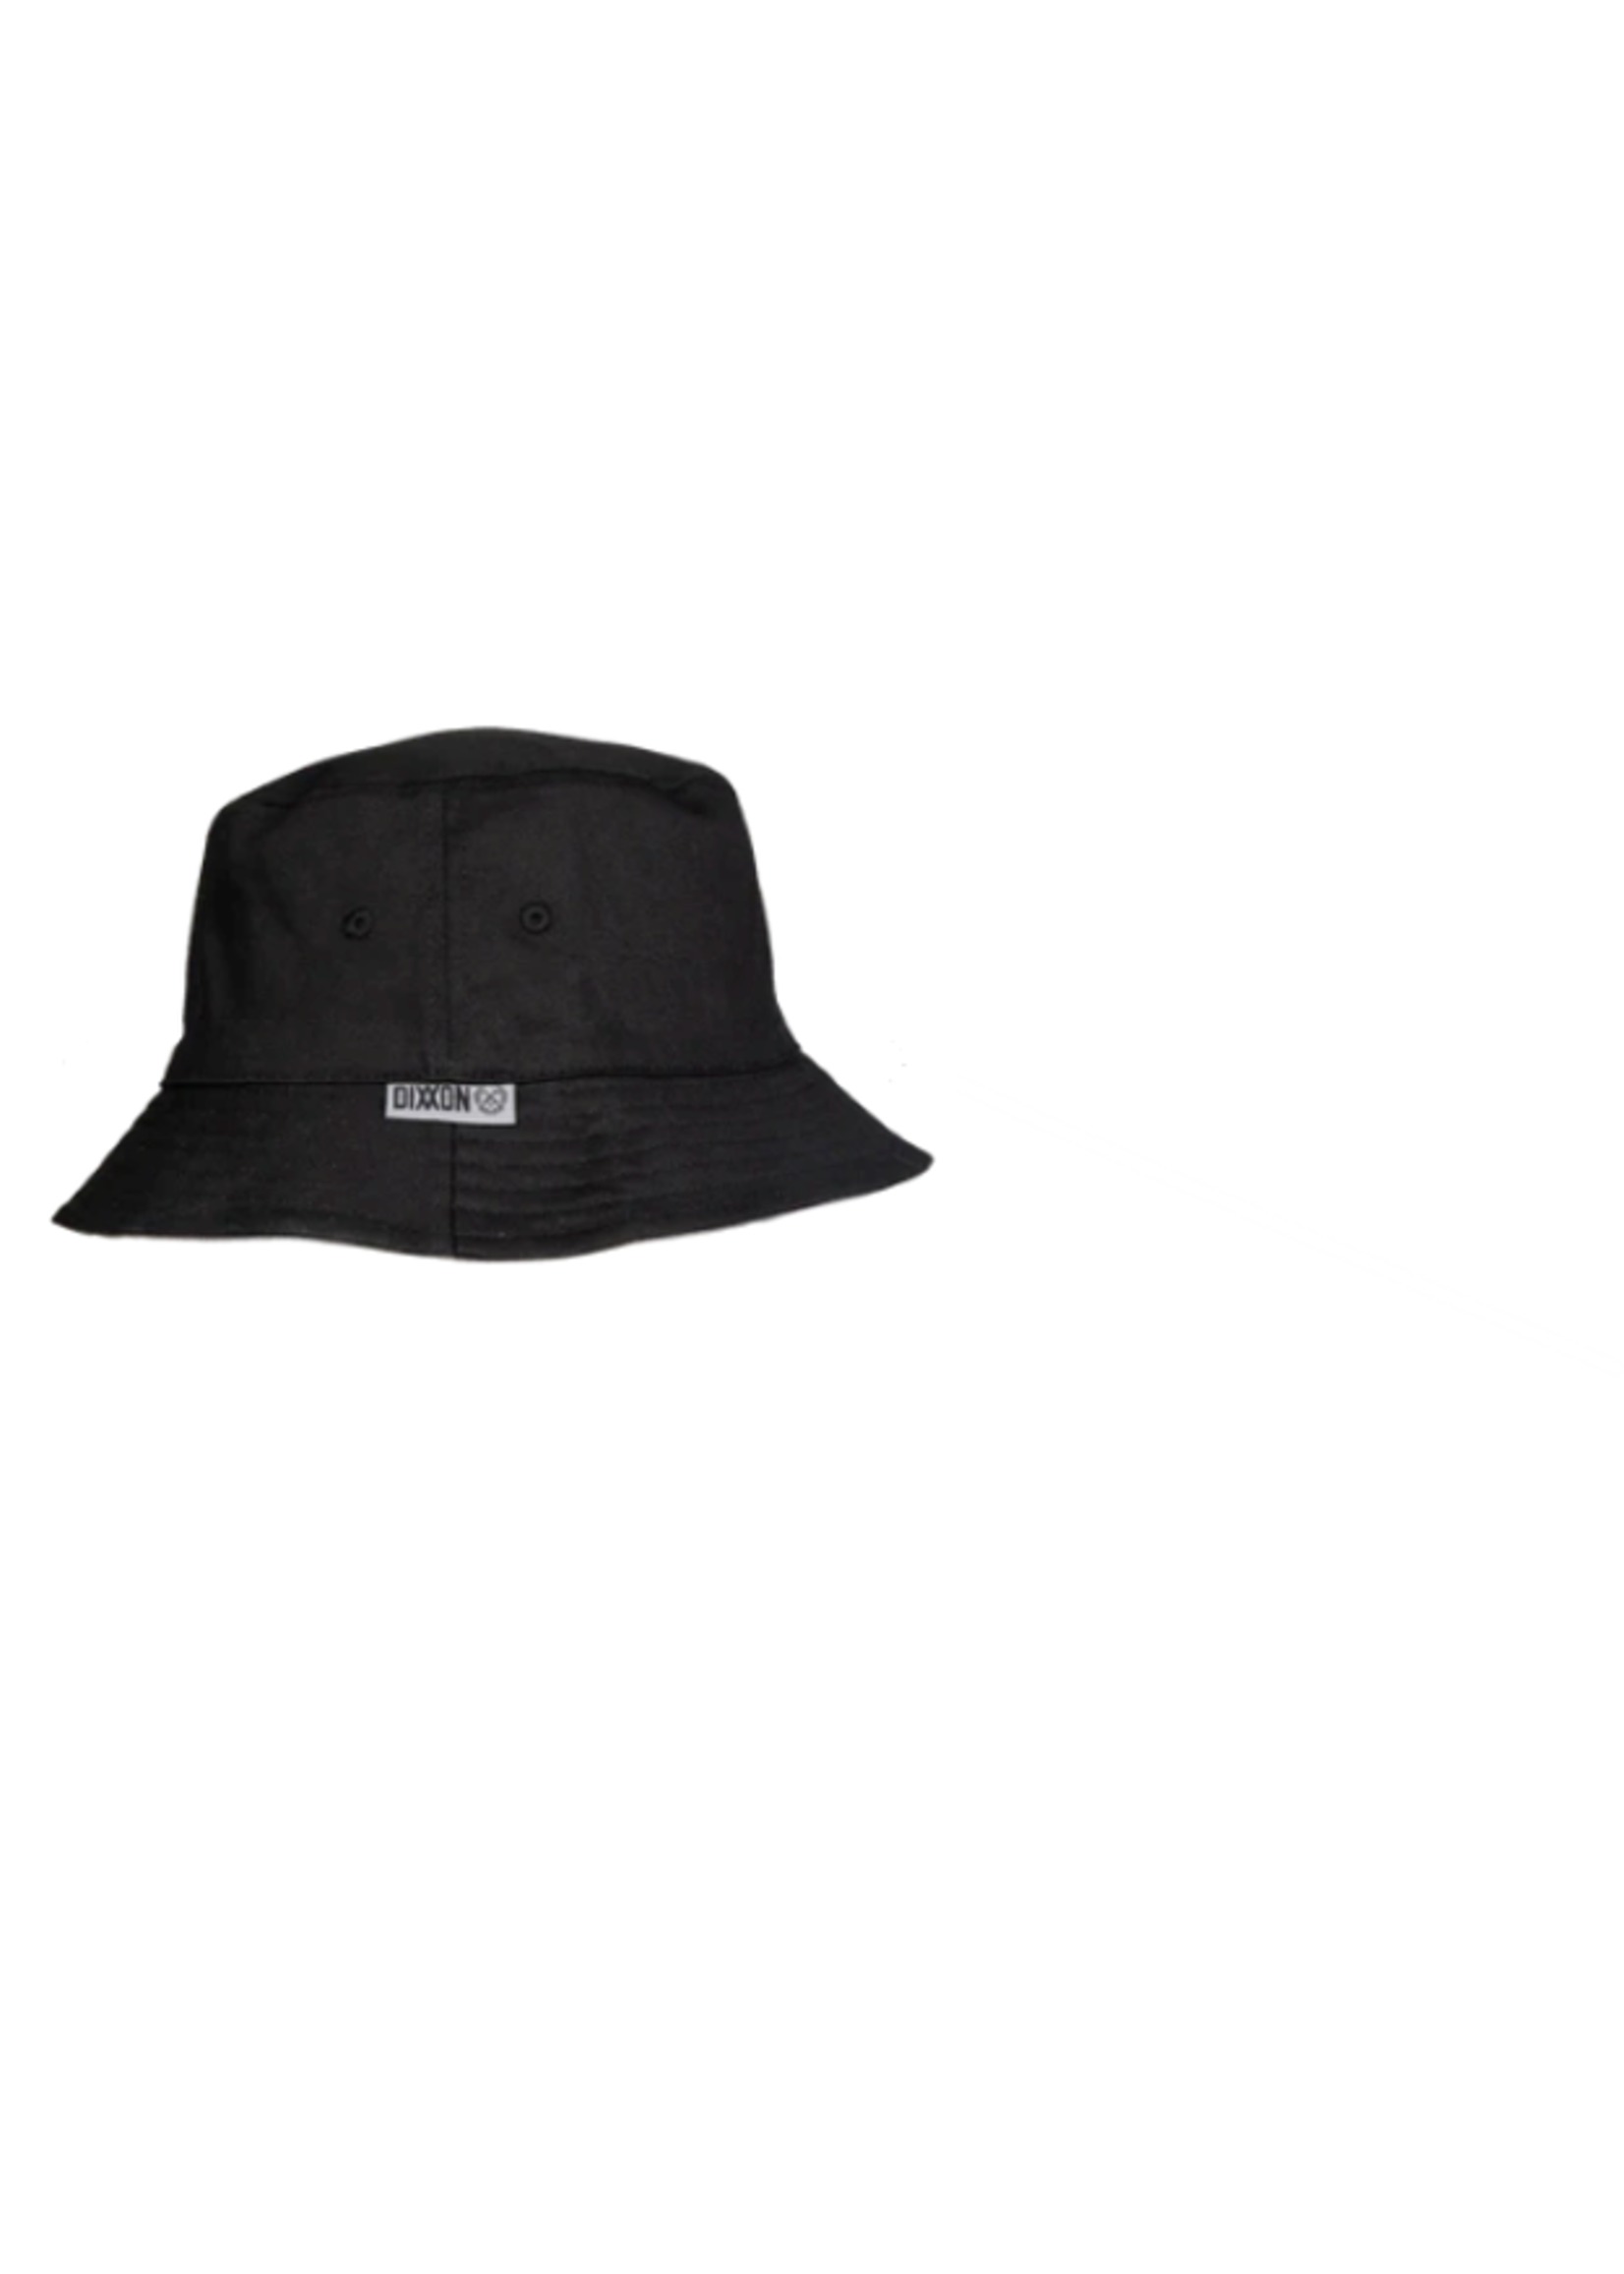 Dixxon Dixxon Bucket Hat